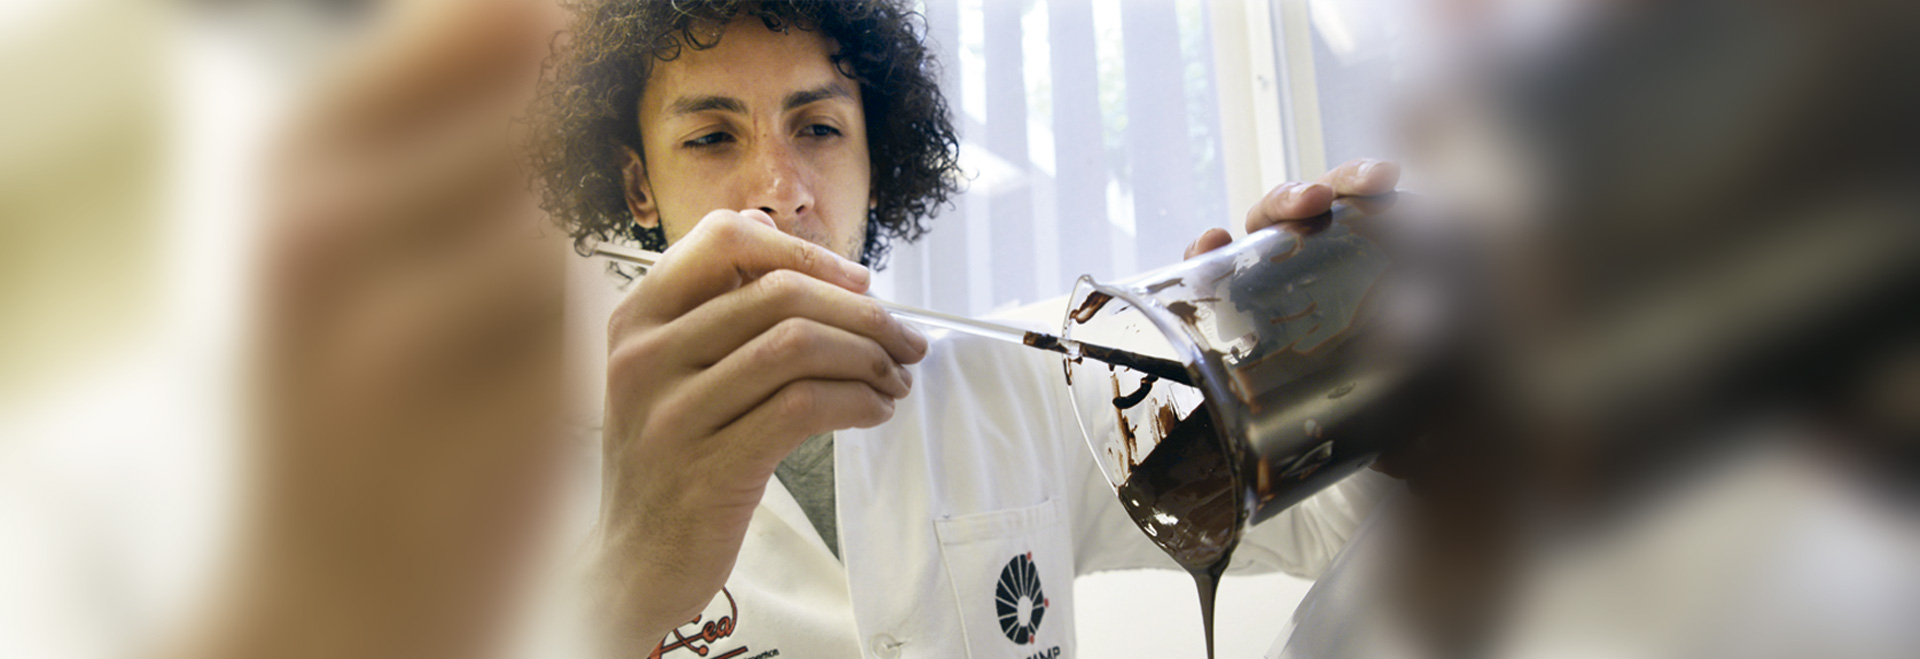 Gabriel Almeida Rodrigues Martins, autor da dissertação, manipula amostra de chocolate em laboratório do Ital